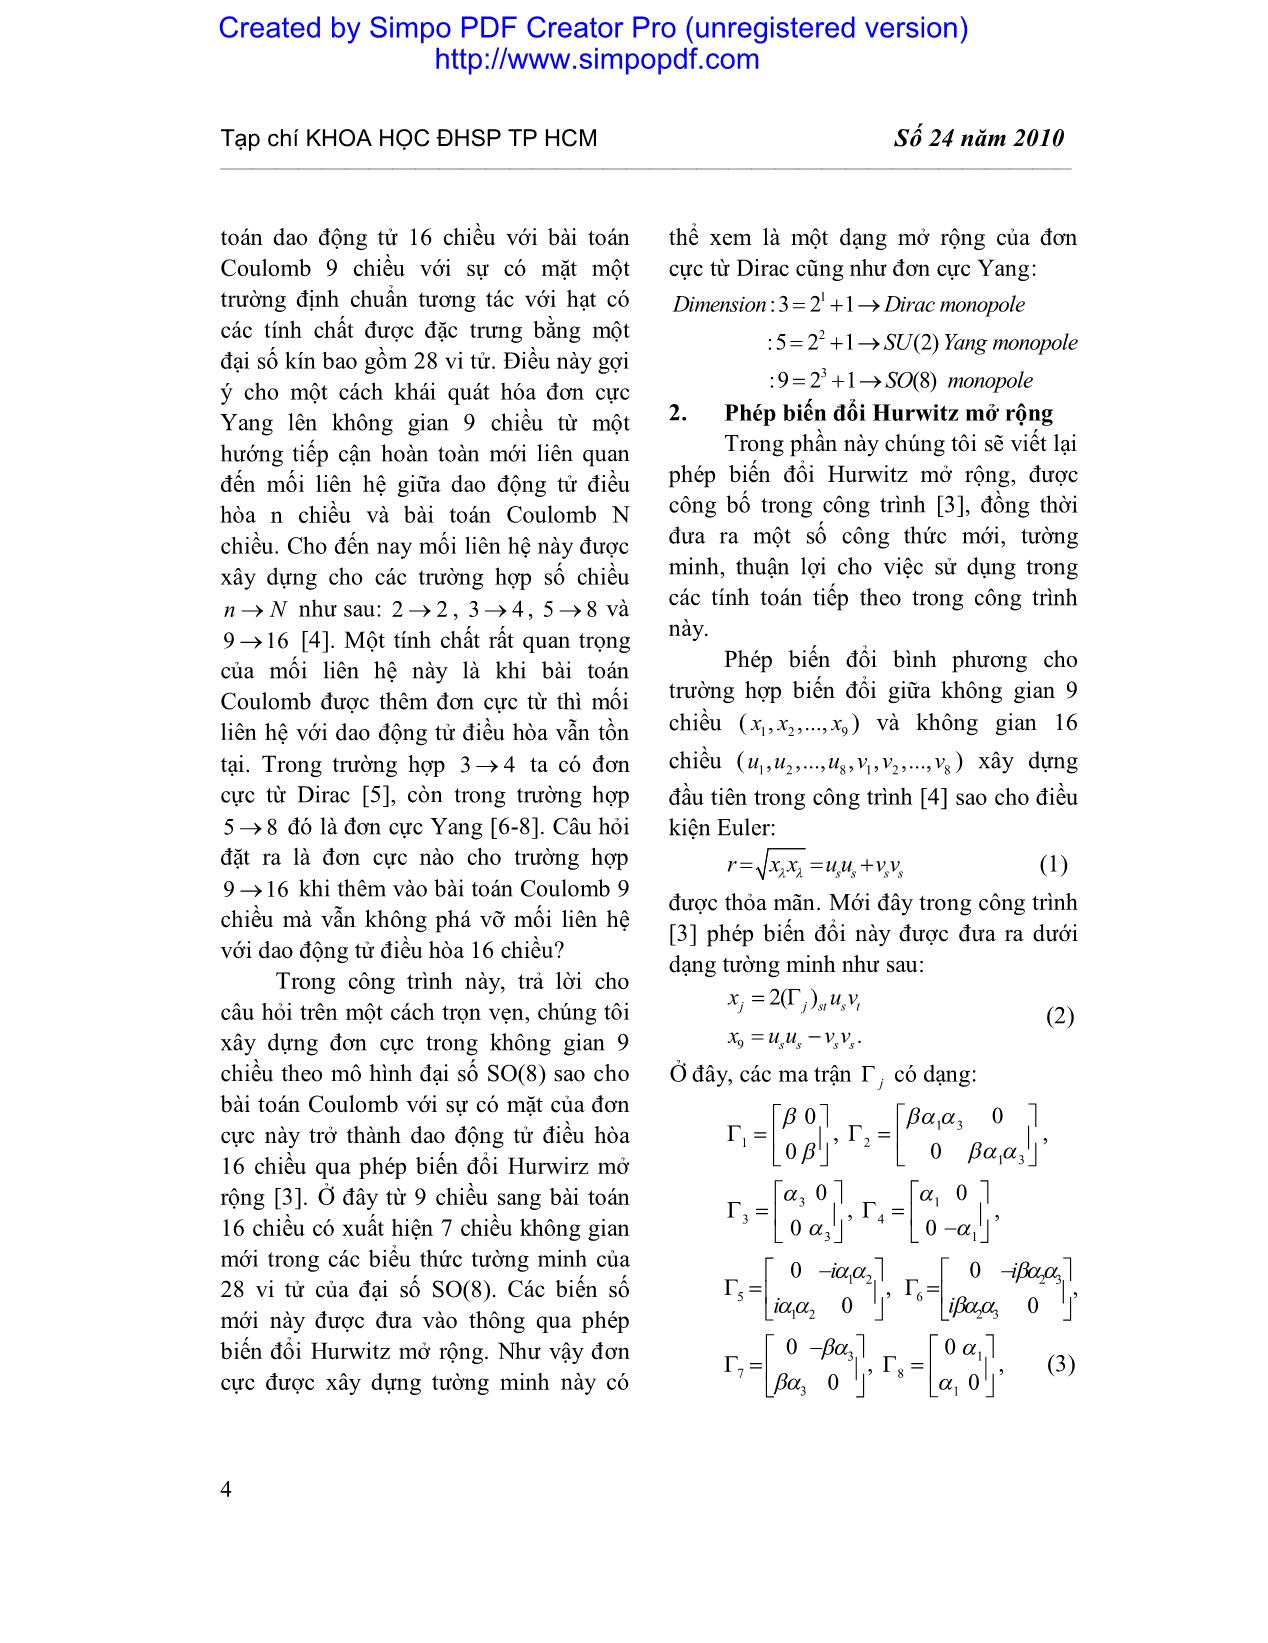 Mở rộng đơn cực Dirac và Yang cho không gian 9 chiều trang 2